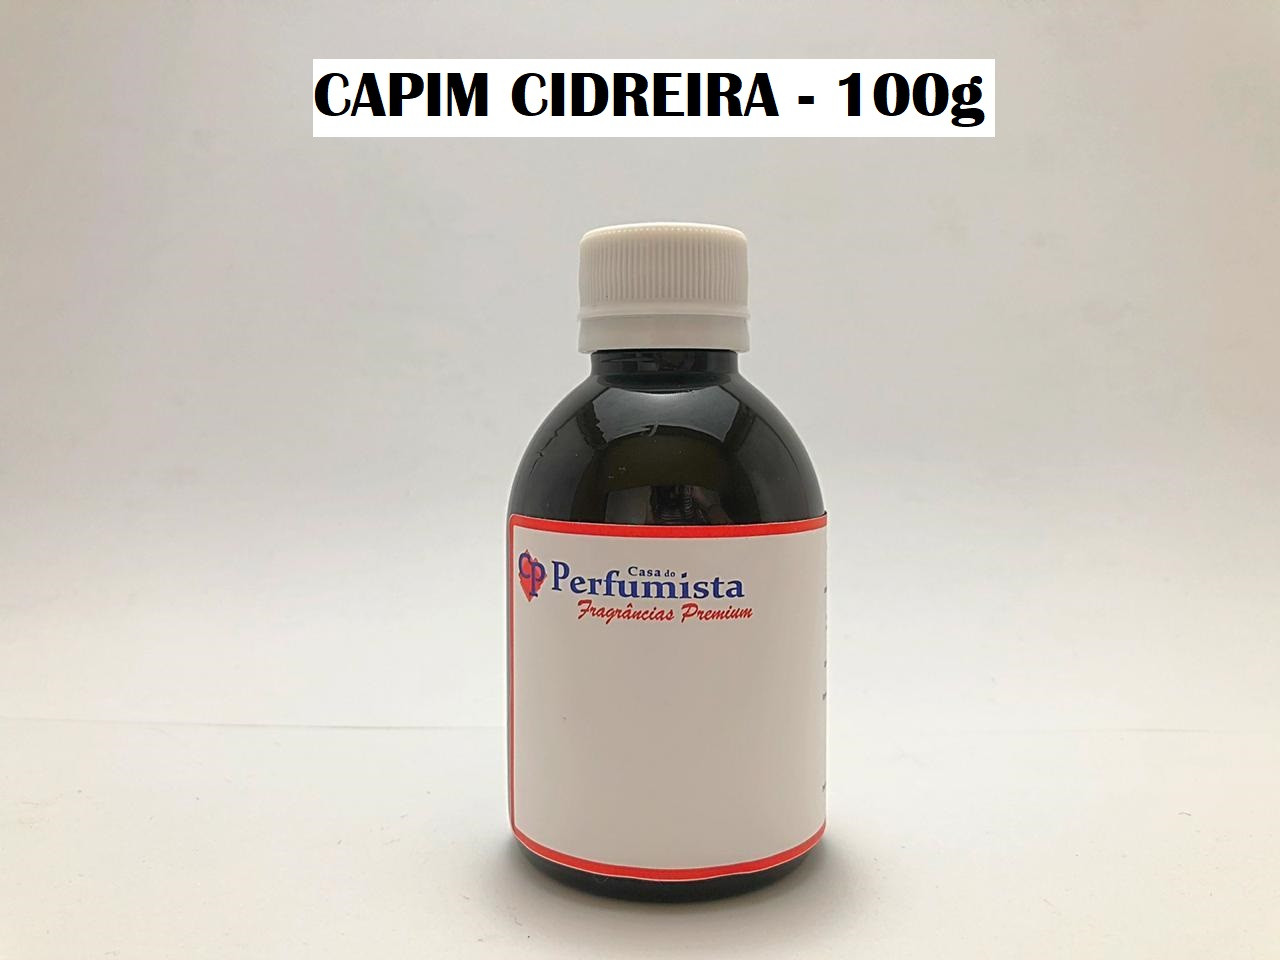 CAPIM CIDREIRA - 100g